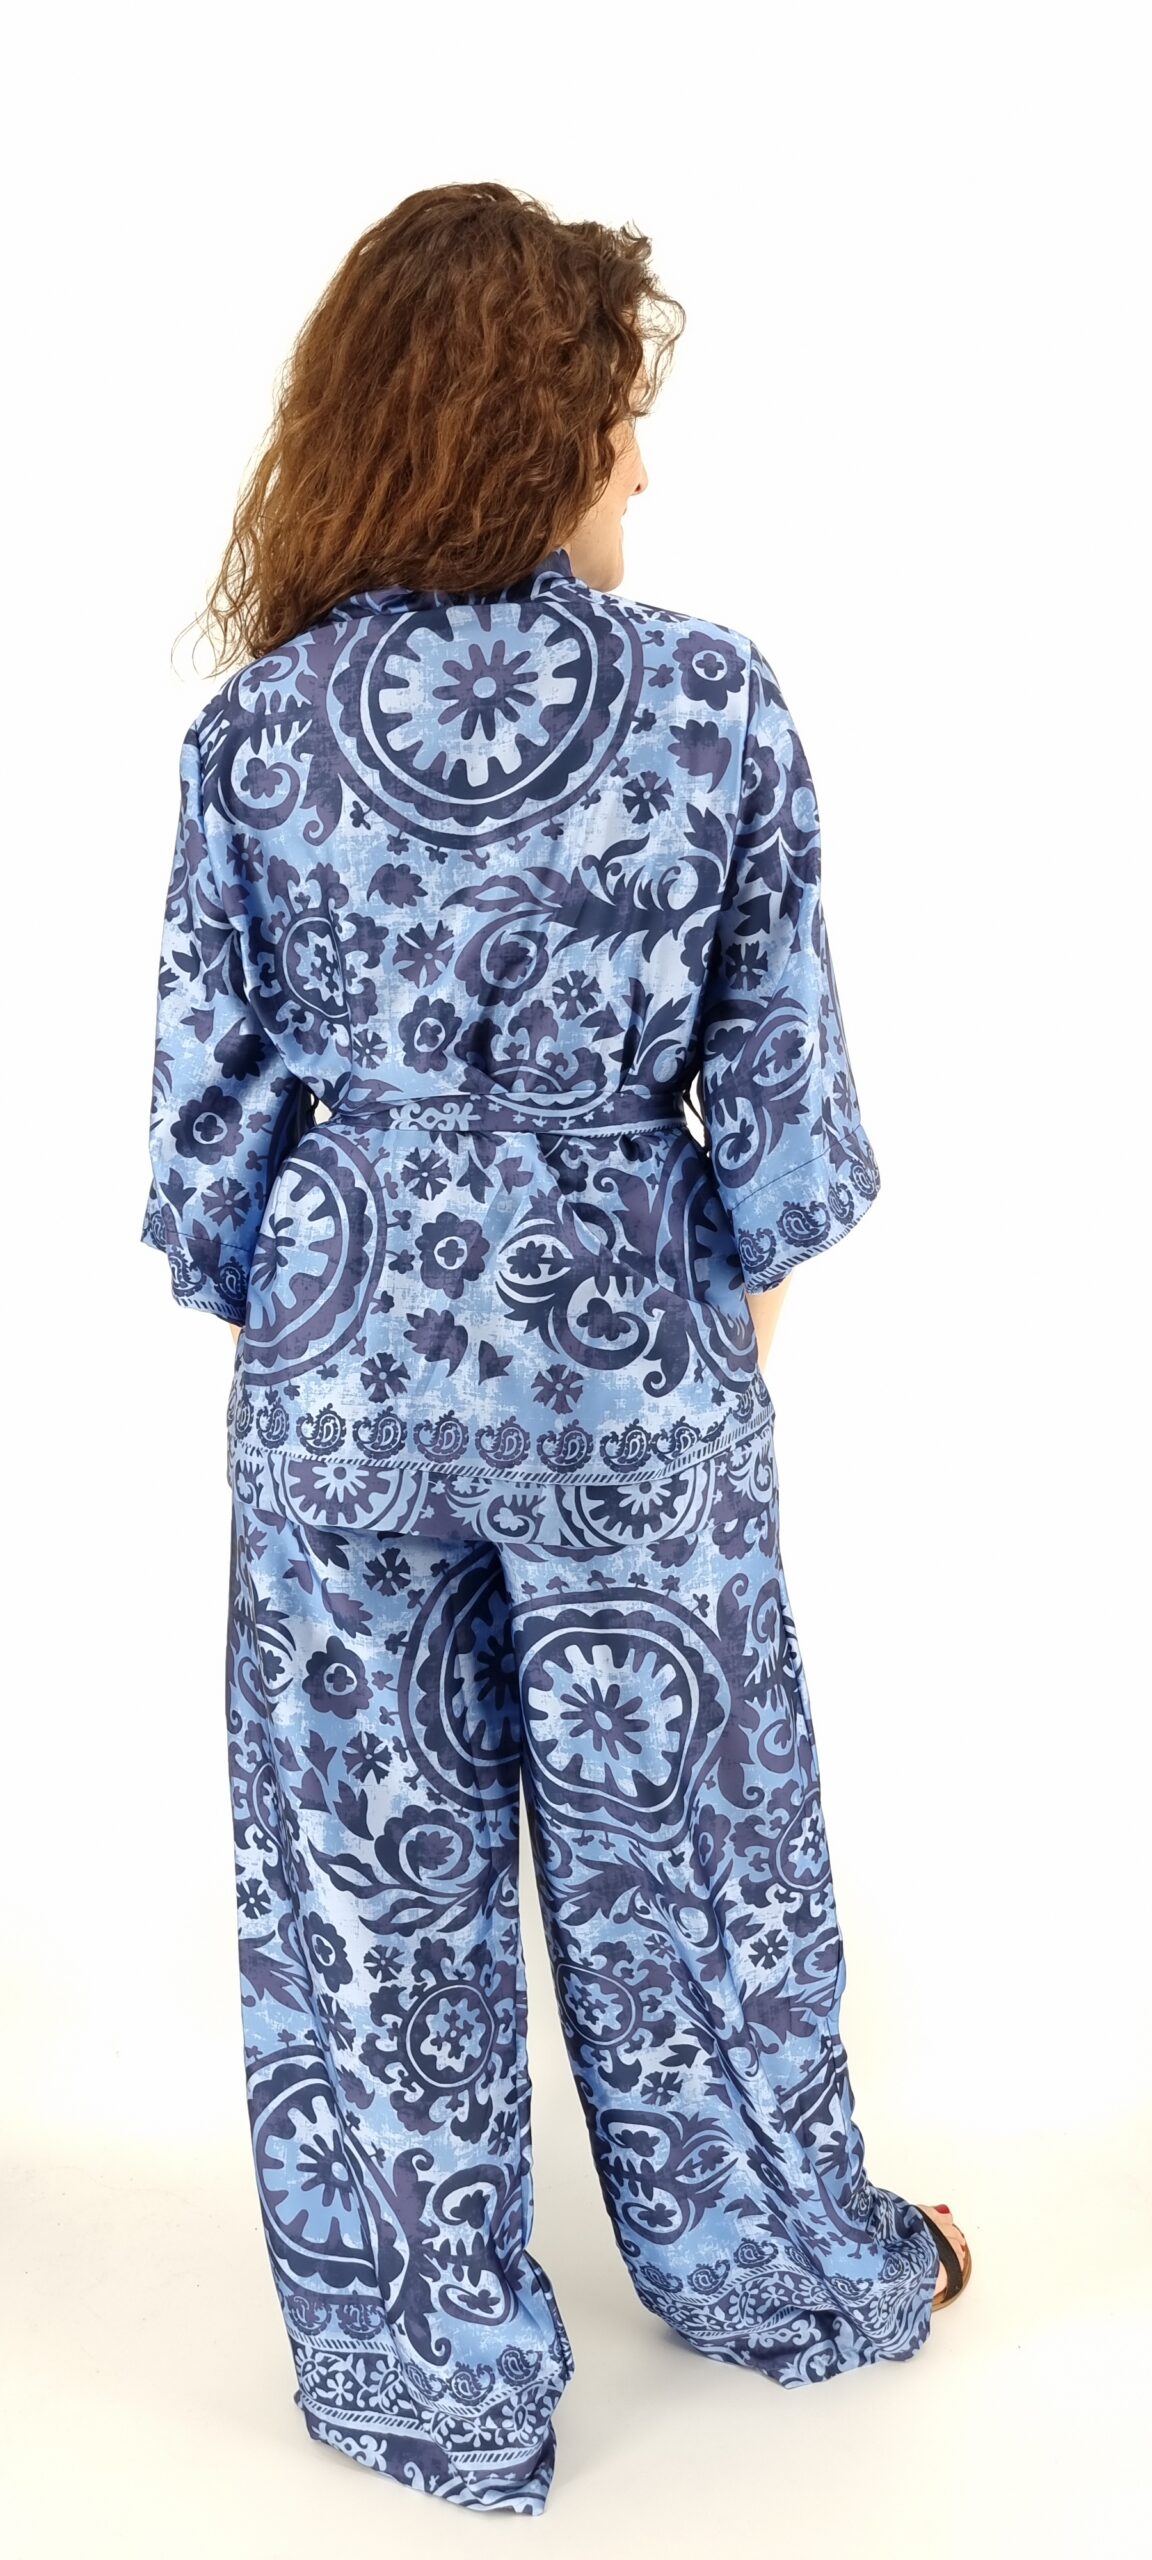 Σετ με κιμωνό και παντελόνα με λάστιχο στη μέση με ιδιαίτερα σχέδια μπλε